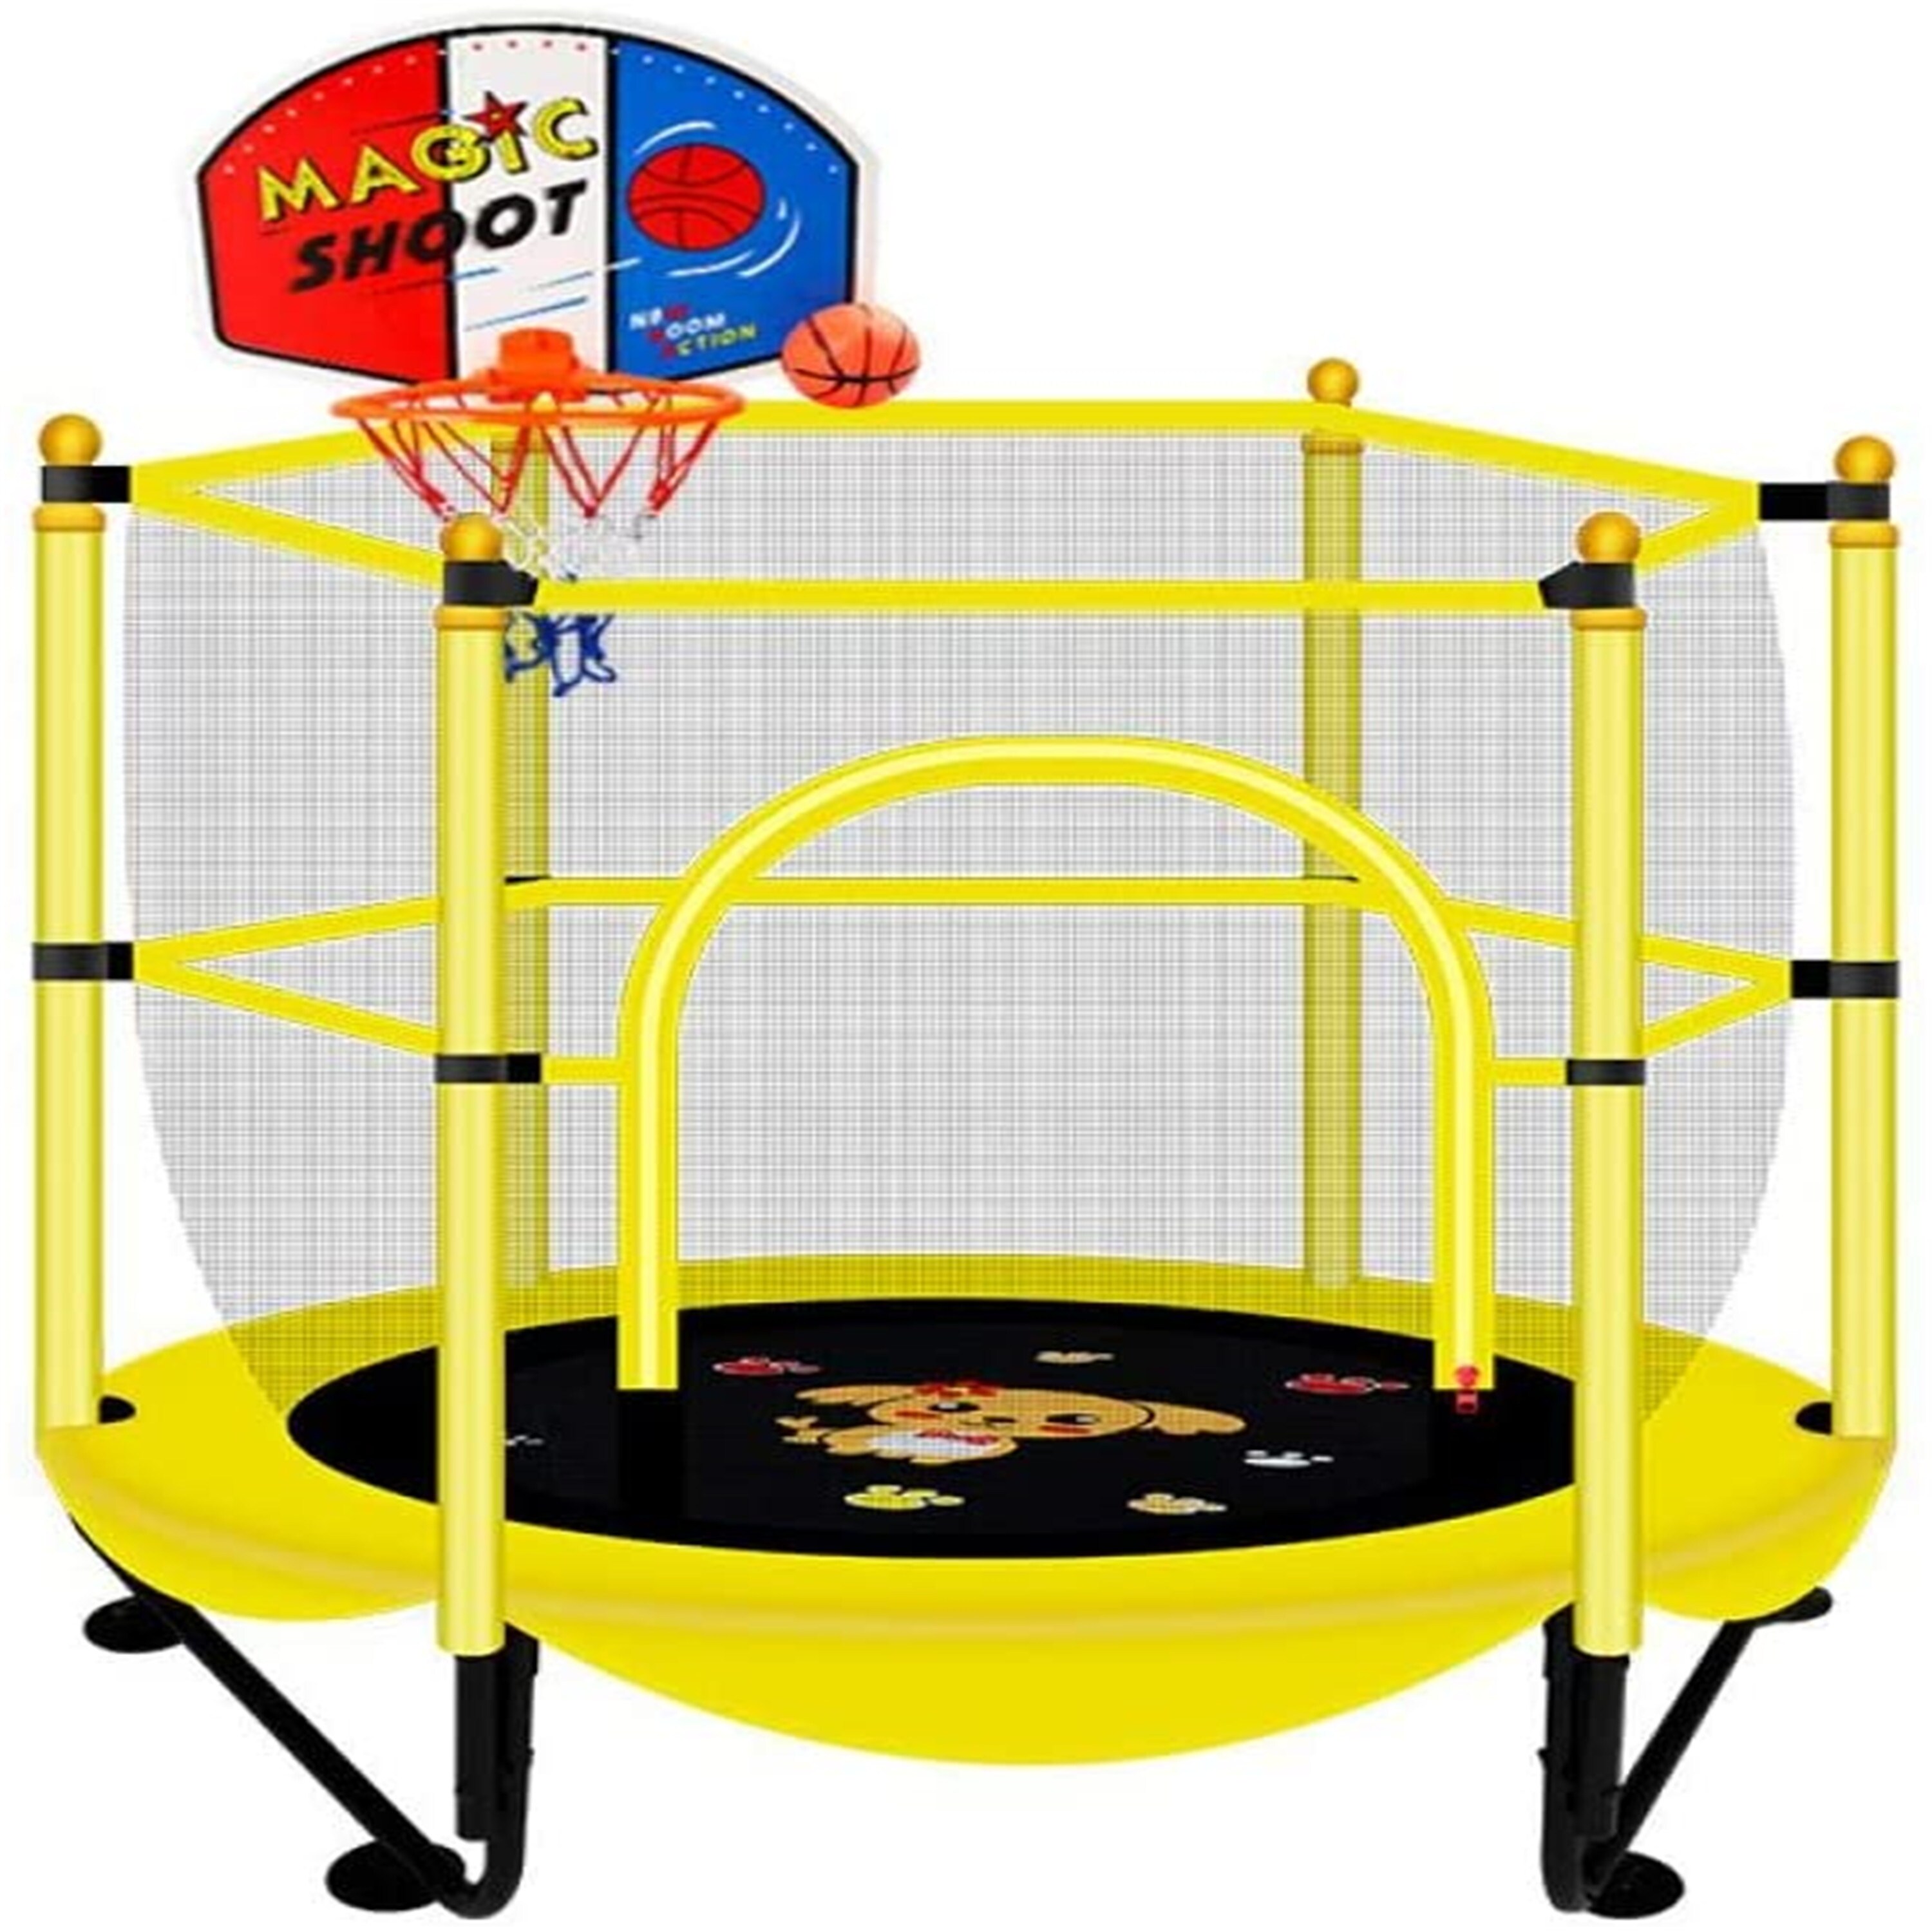 Tænke stress Vågn op 59undefinedundefined Trampoline for Kids with Safety Enclosure, Hanging  Basketball Hoop Jumping Bed, Load 220 Ibs - - 31457468